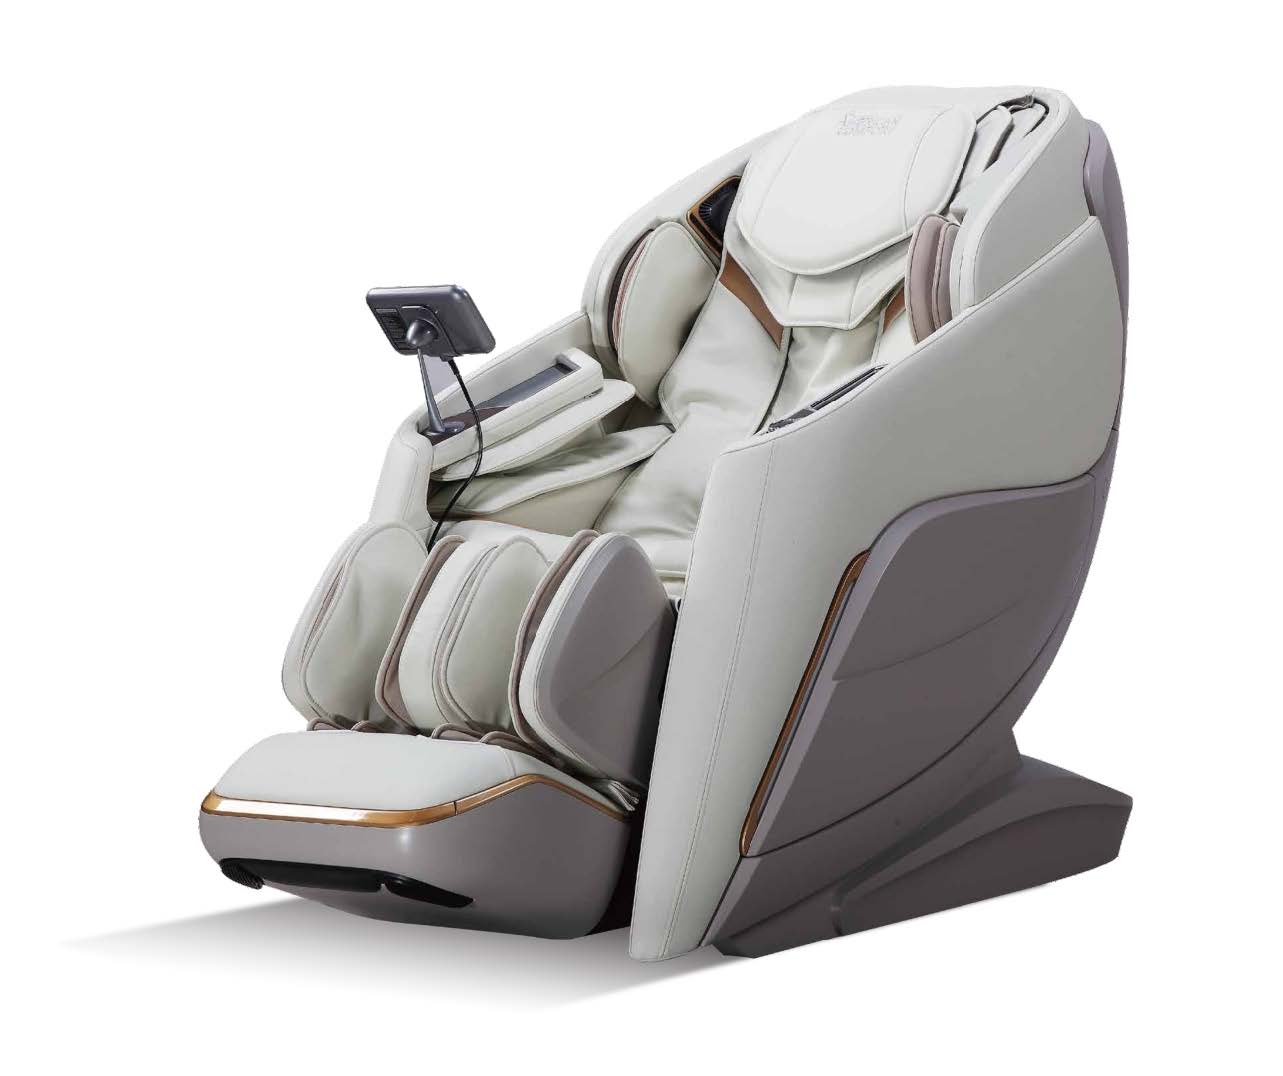 5D Massage Chair in telangana, 5D Massage Chair Manufacturers